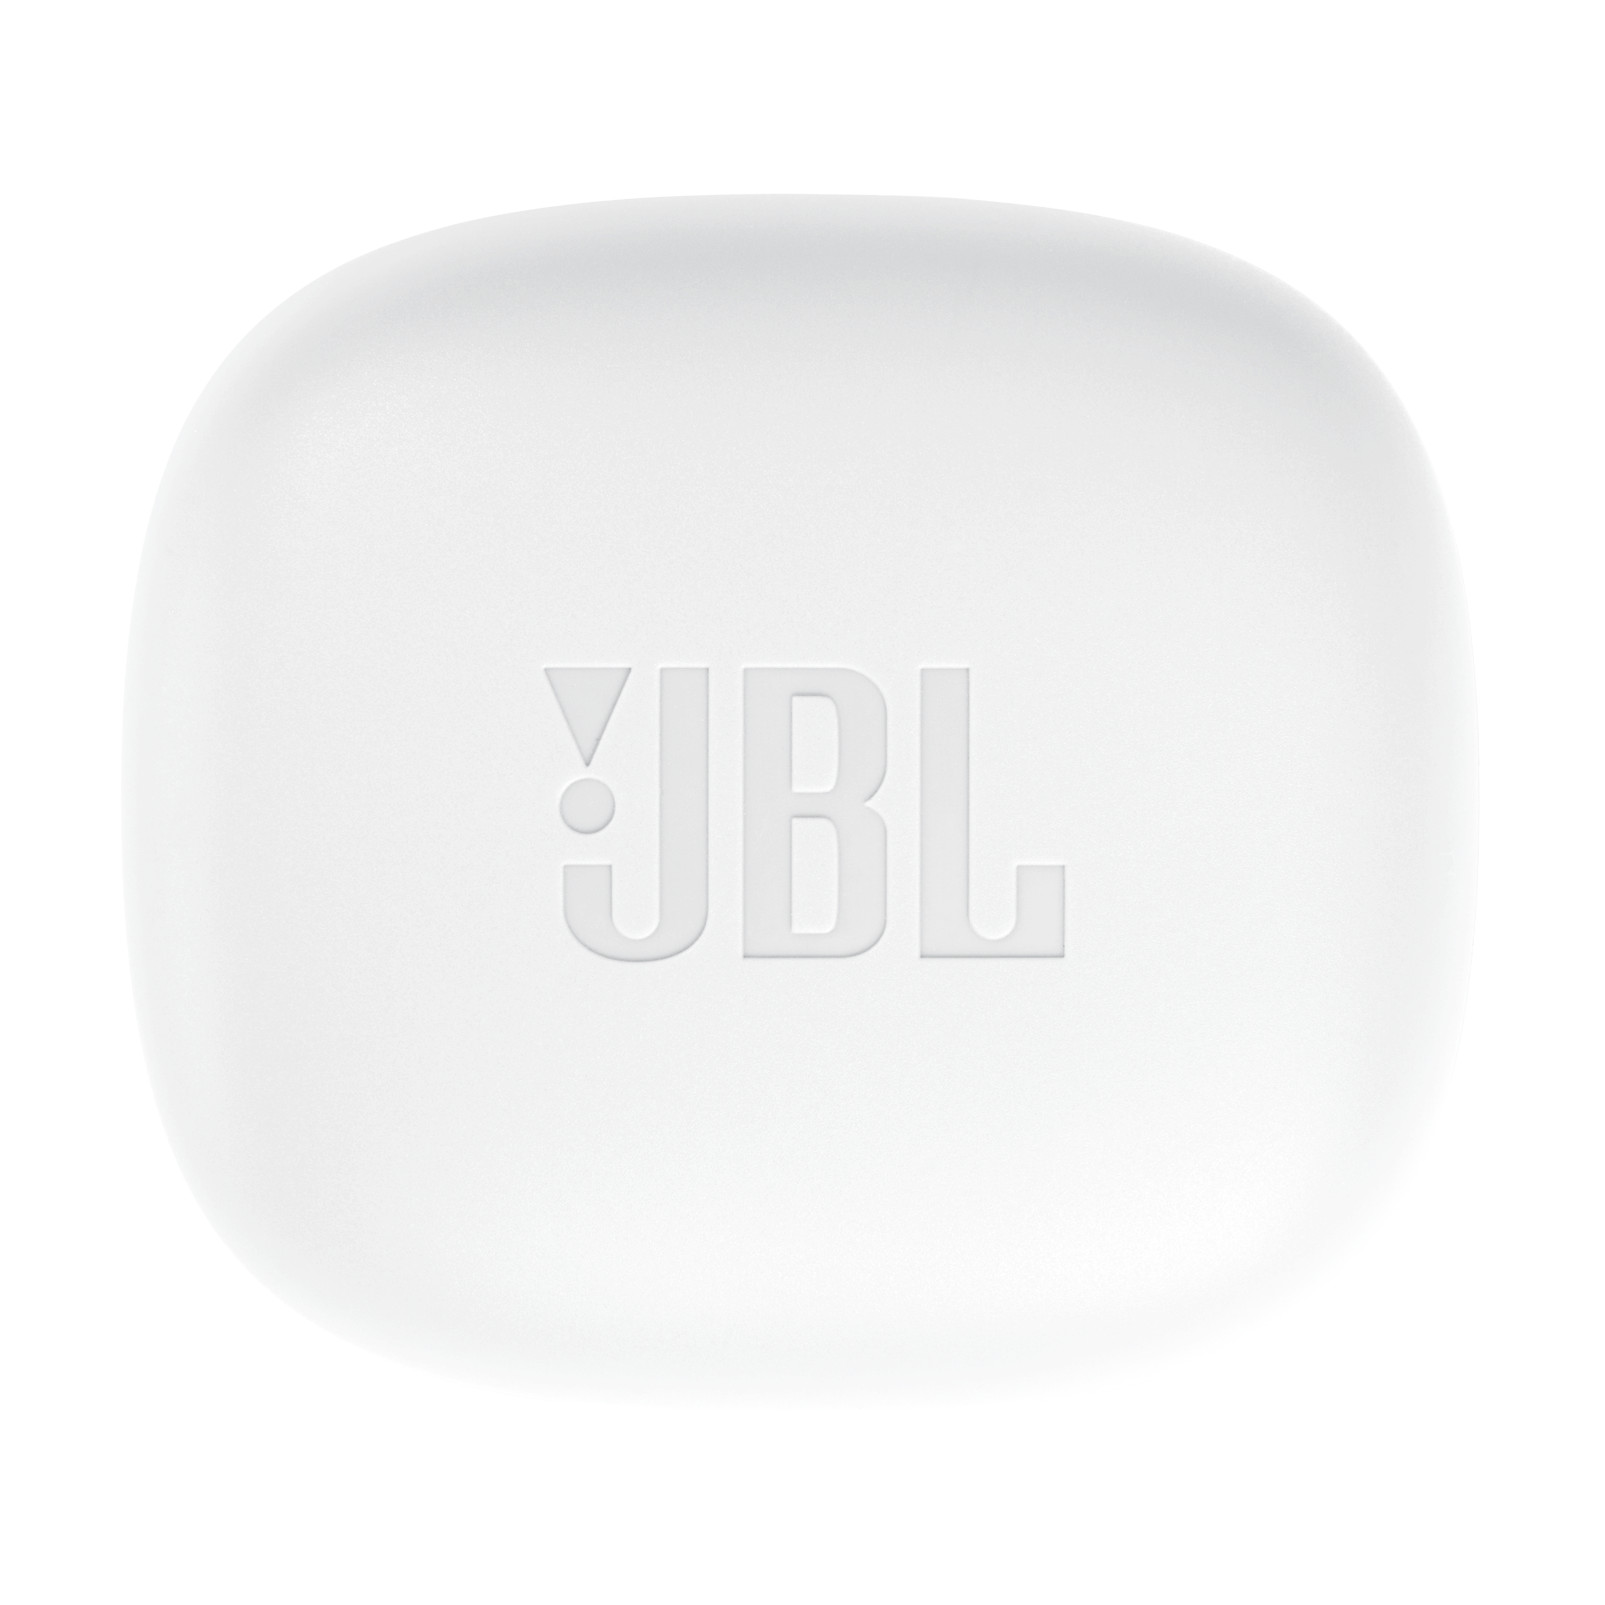 Bluetooth slušalke JBL Vibe Flex bele